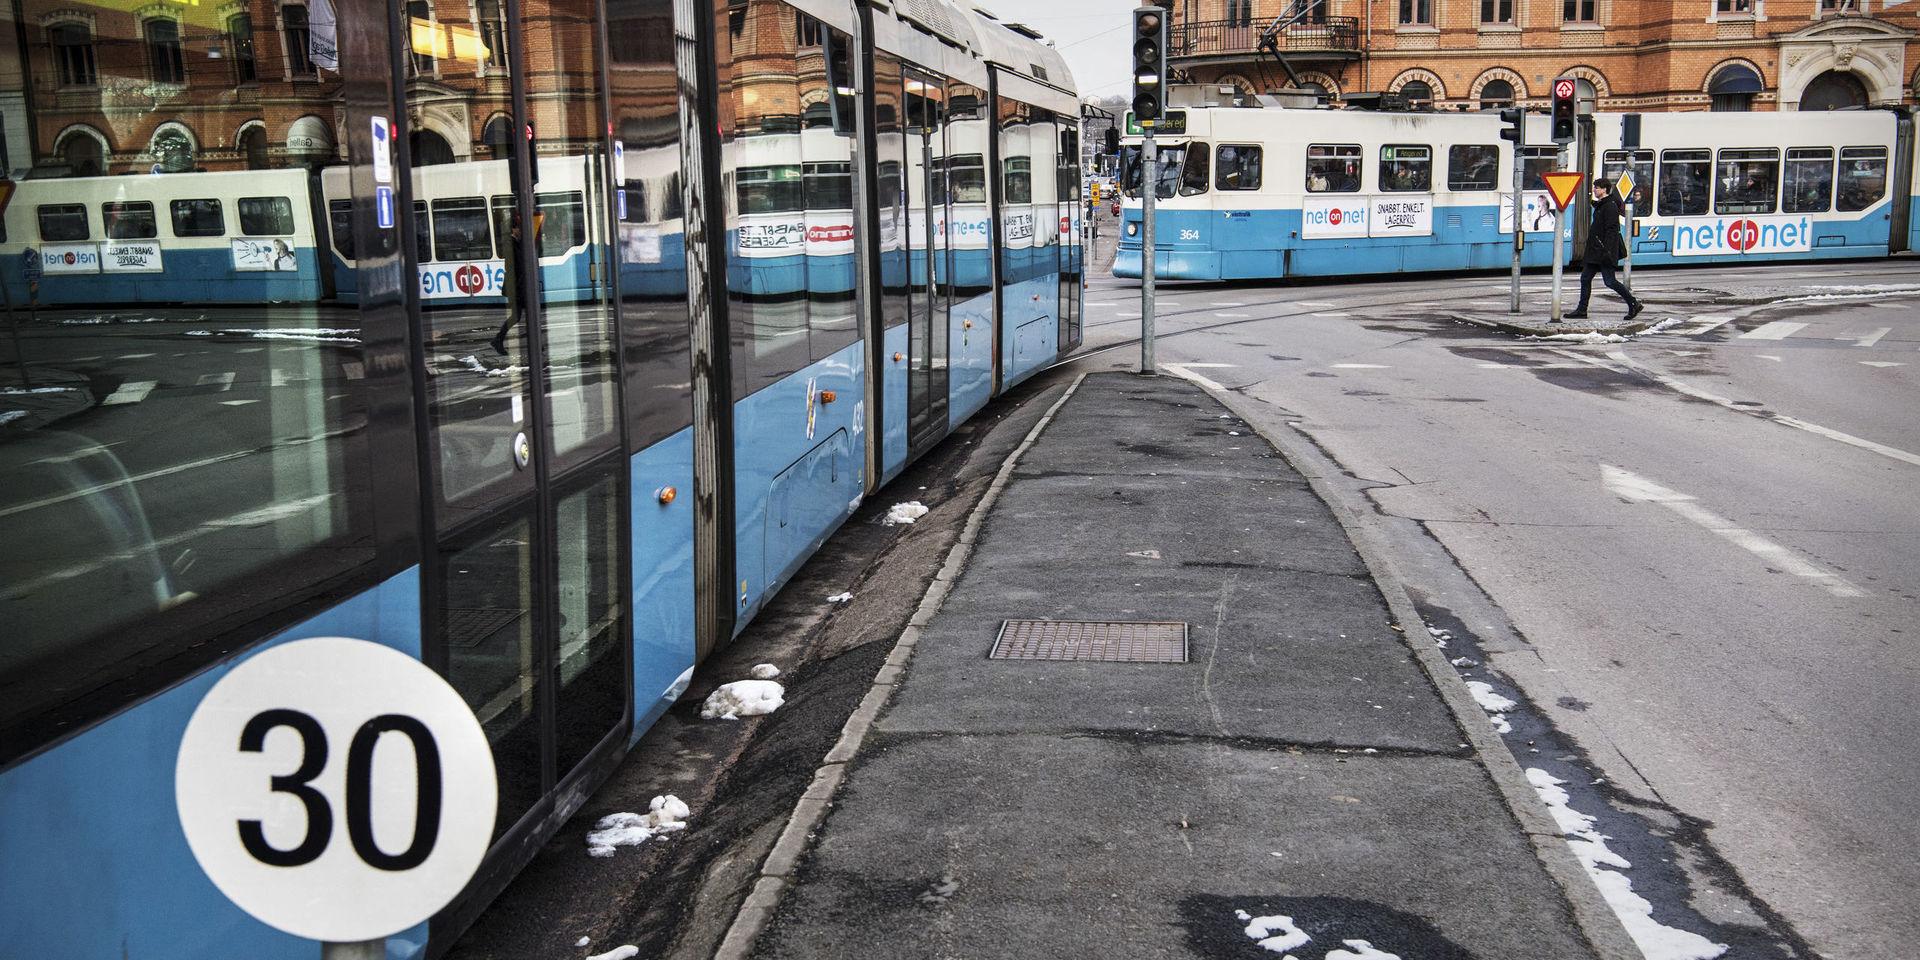 Med tanke på att spårvagnarna i Göteborg och Mölndal varje dygn transporterar ett par hundra tusen passagerare är det extremt få platser som tas bort, skriver insändaren. 